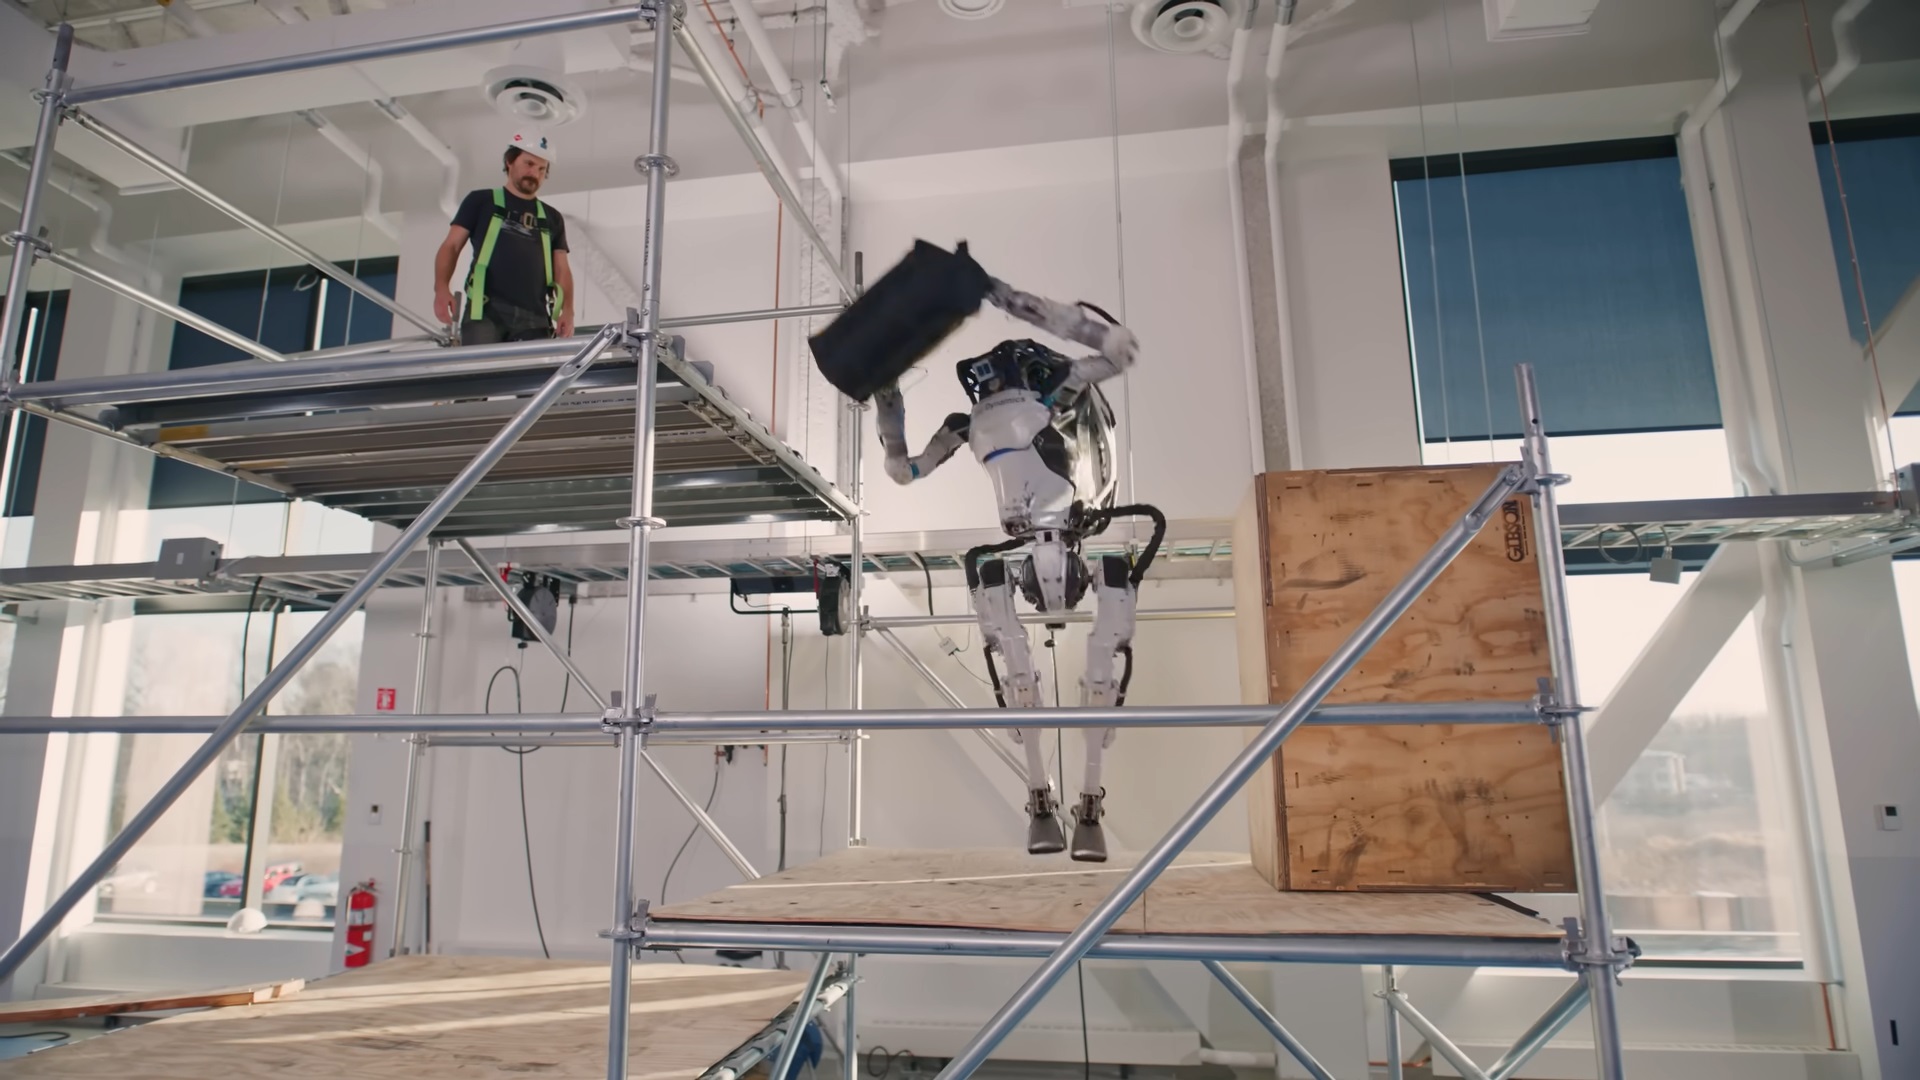 У робота Atlas новые способности: теперь он хватает и кидает предметы